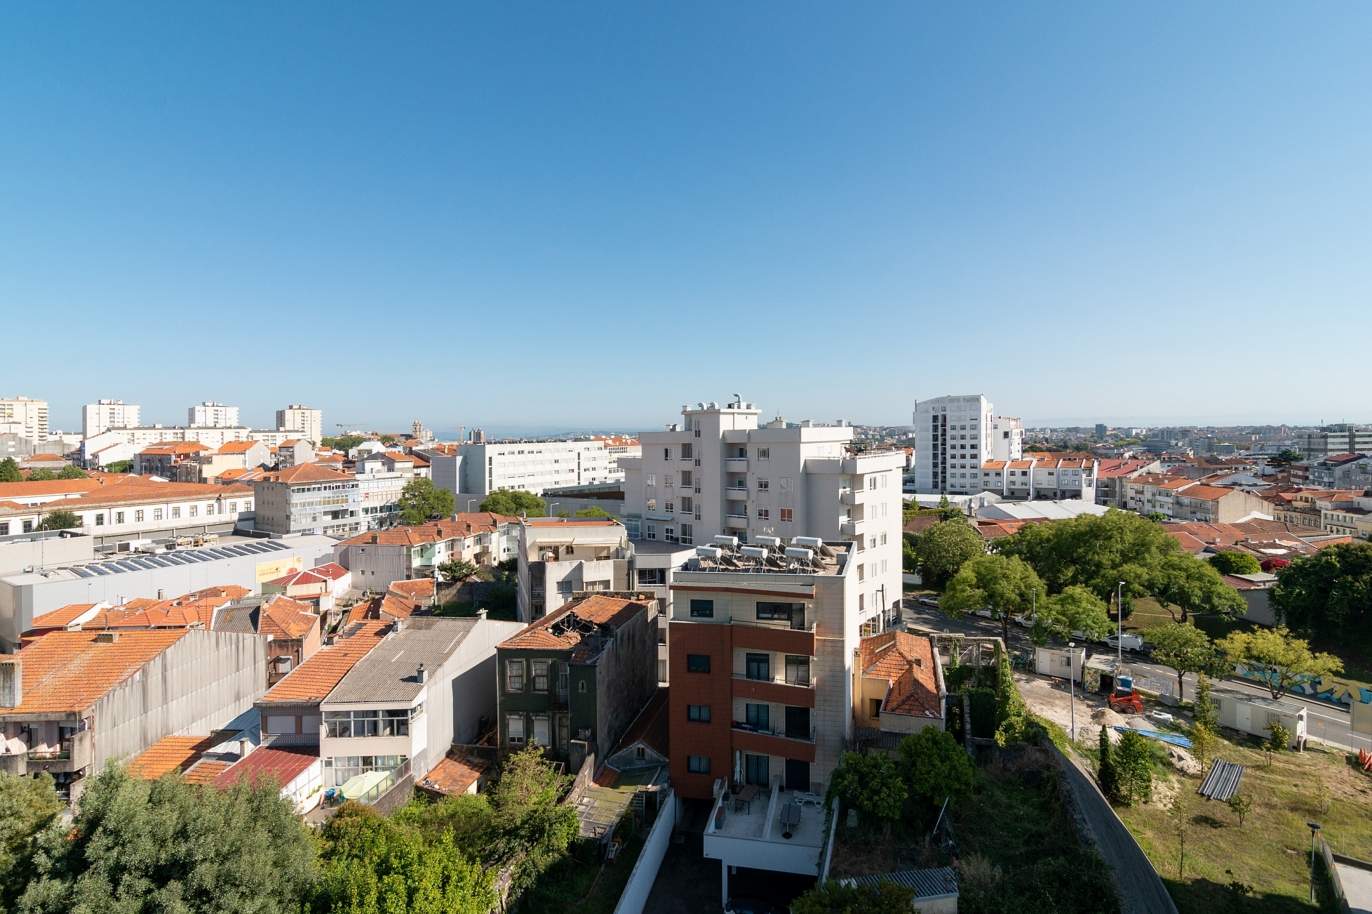 Apartamento com varanda, para venda, na Boavista, Porto, Portugal_177605